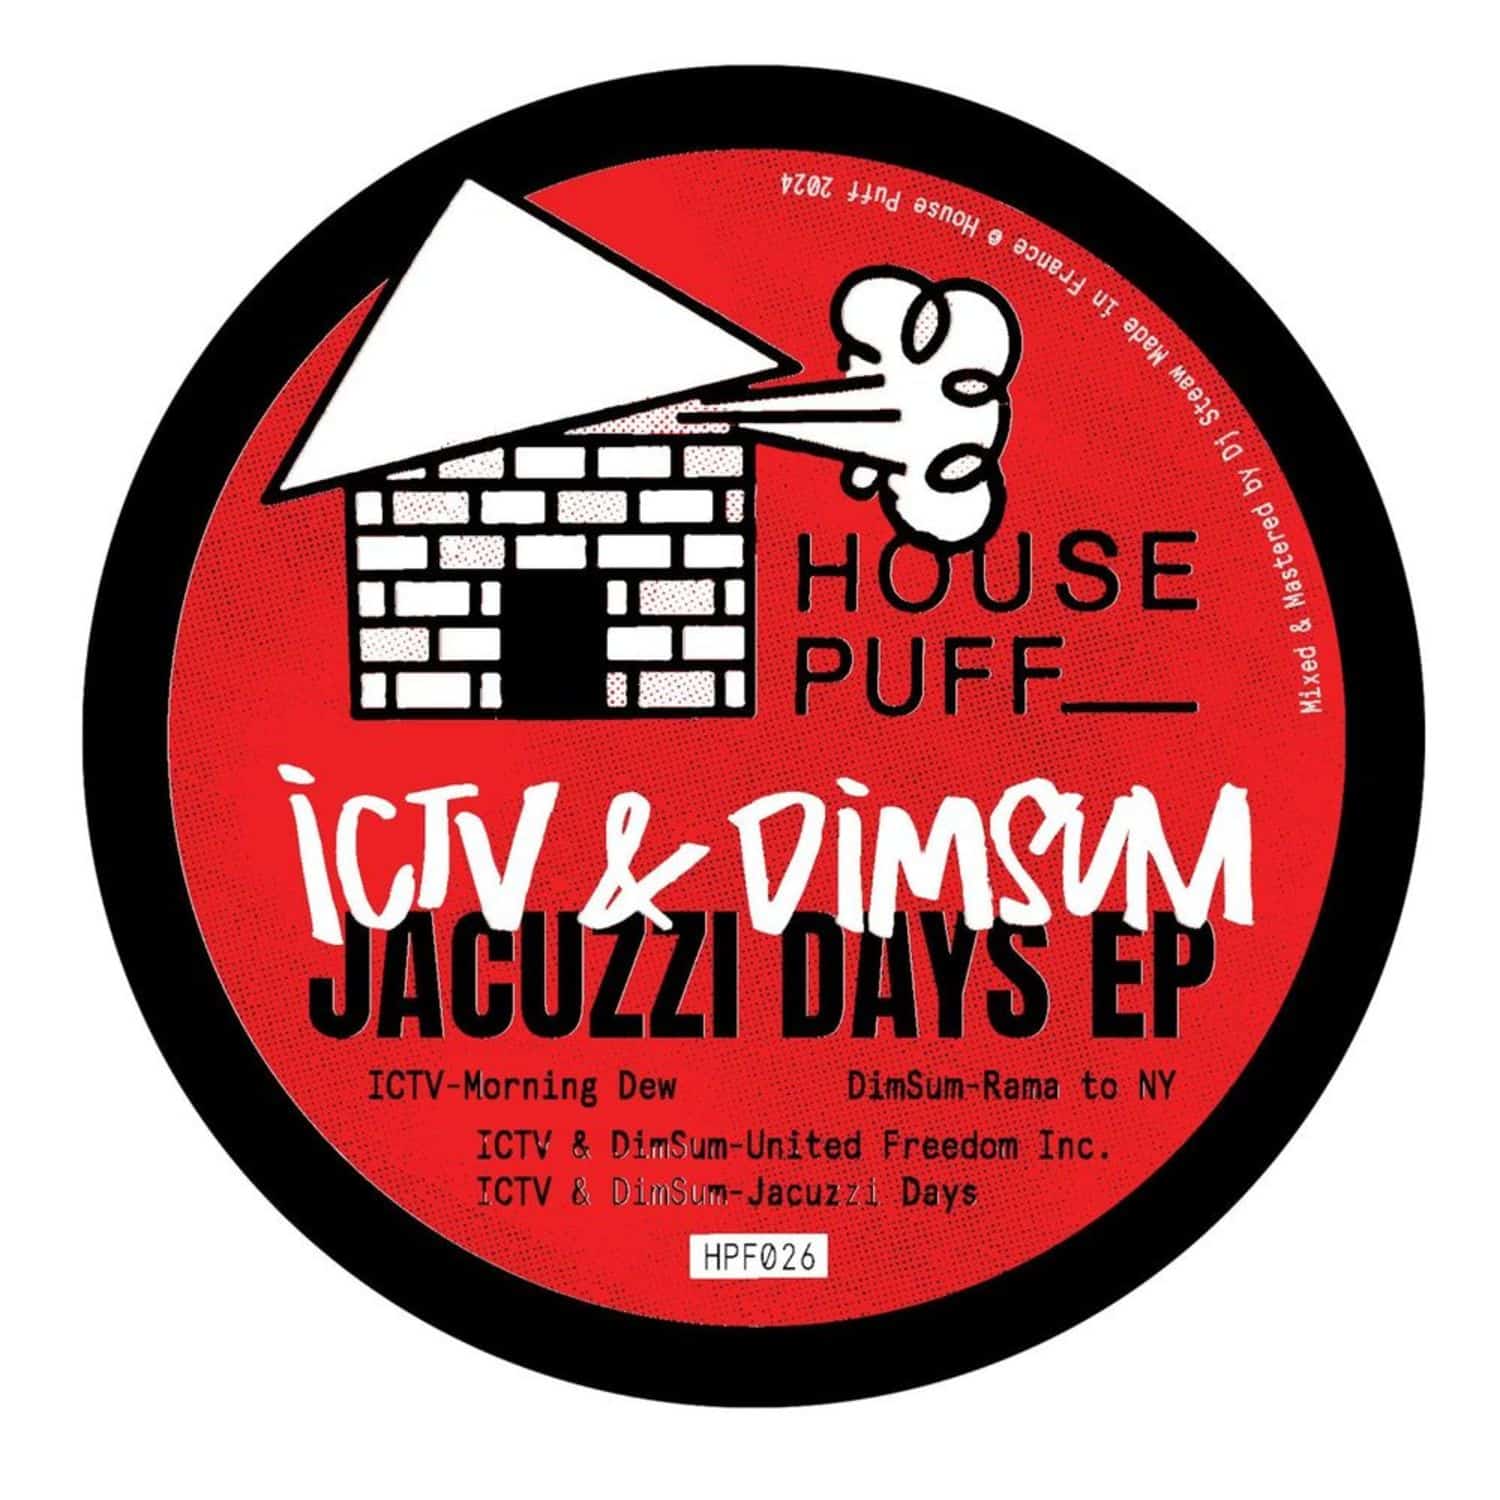 ICTV & DimSum - JACUZZI DAYS EP